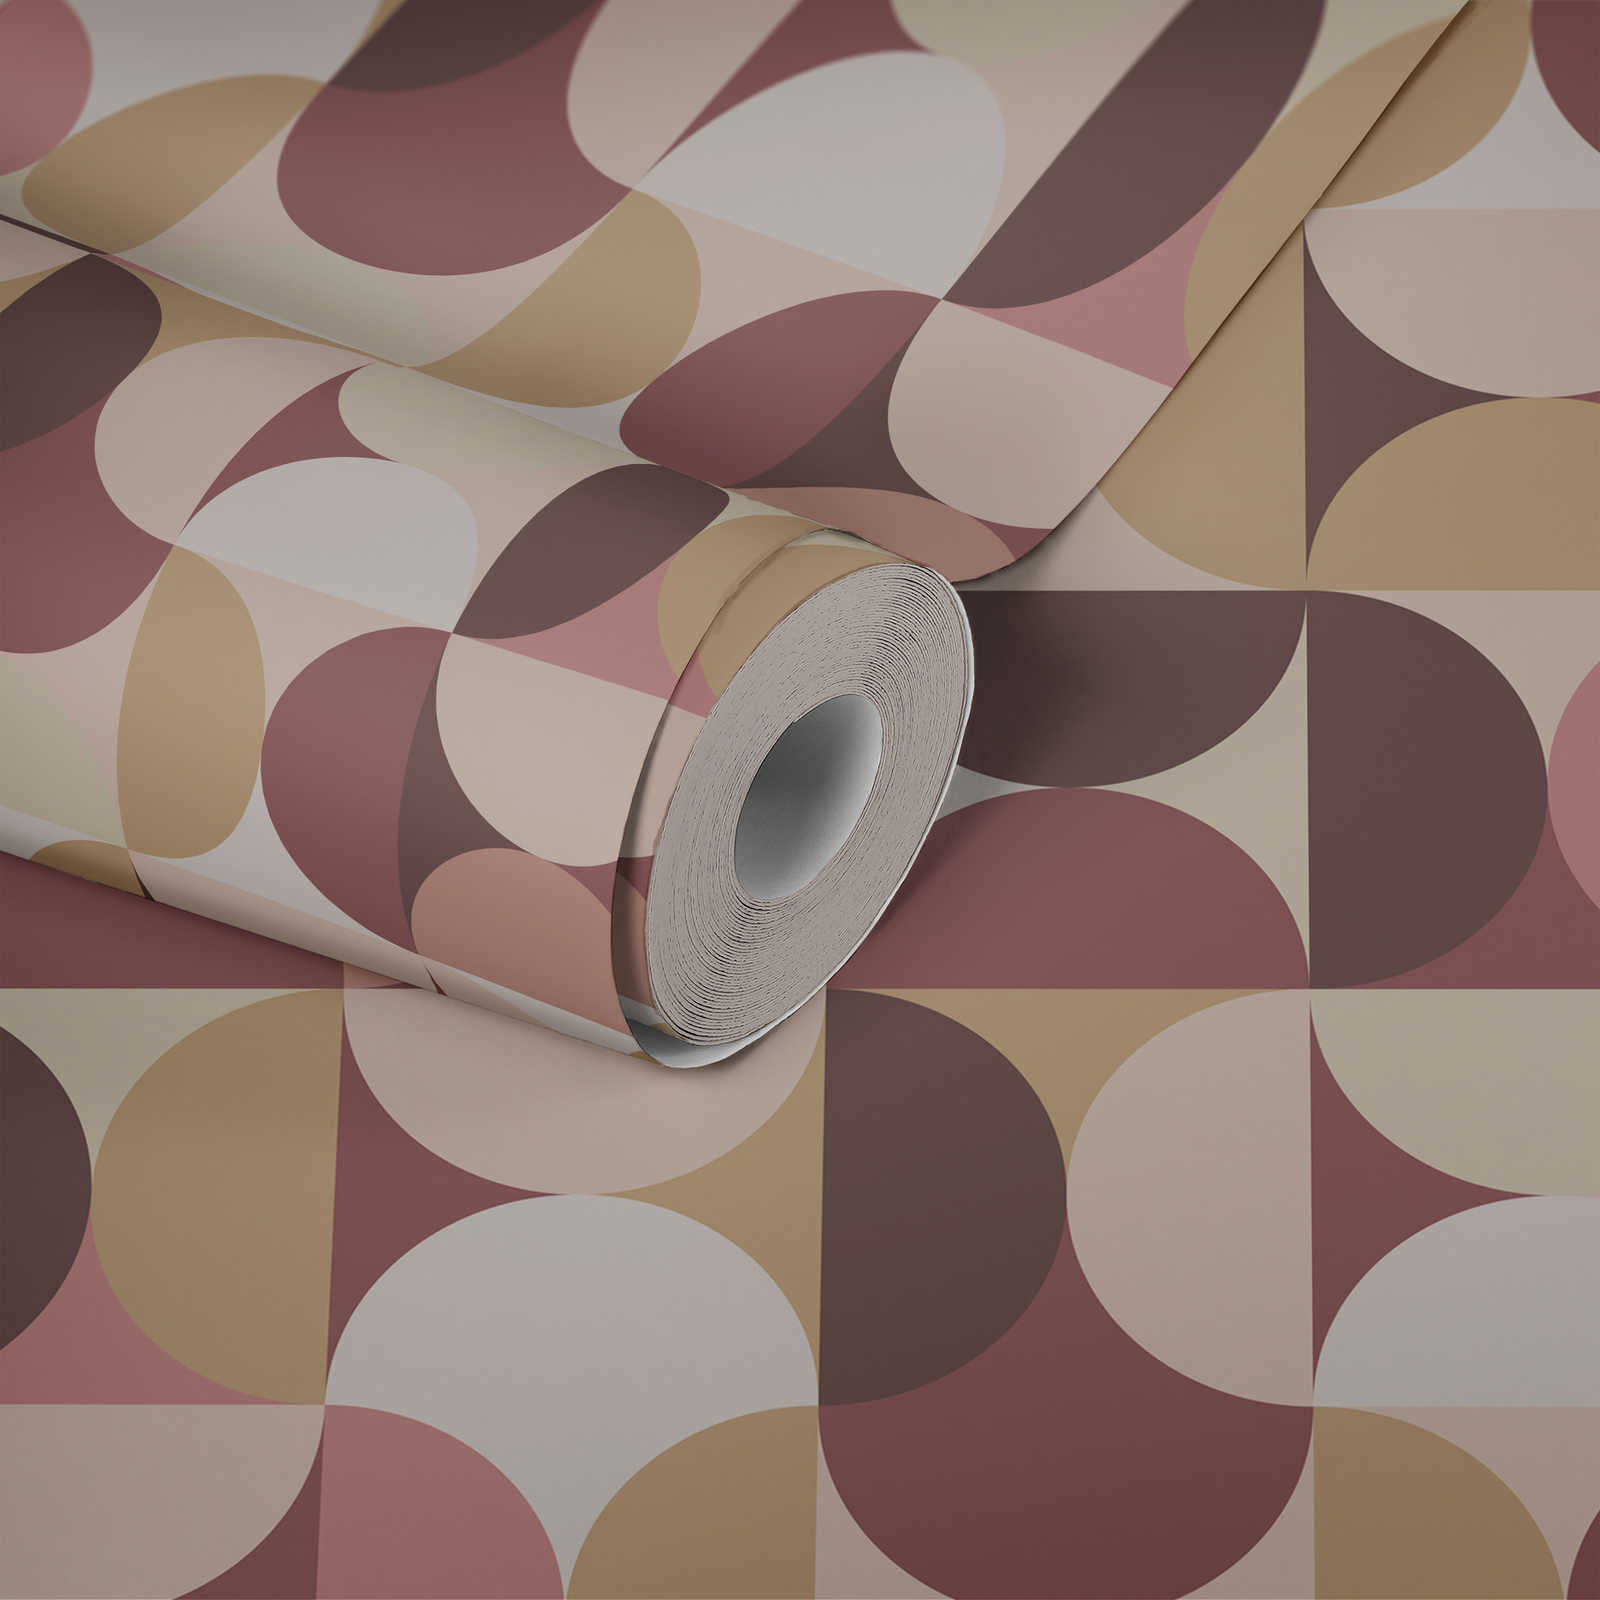             papier peint en papier graphique semi-circulaire style rétro des années 70 - beige, rose
        